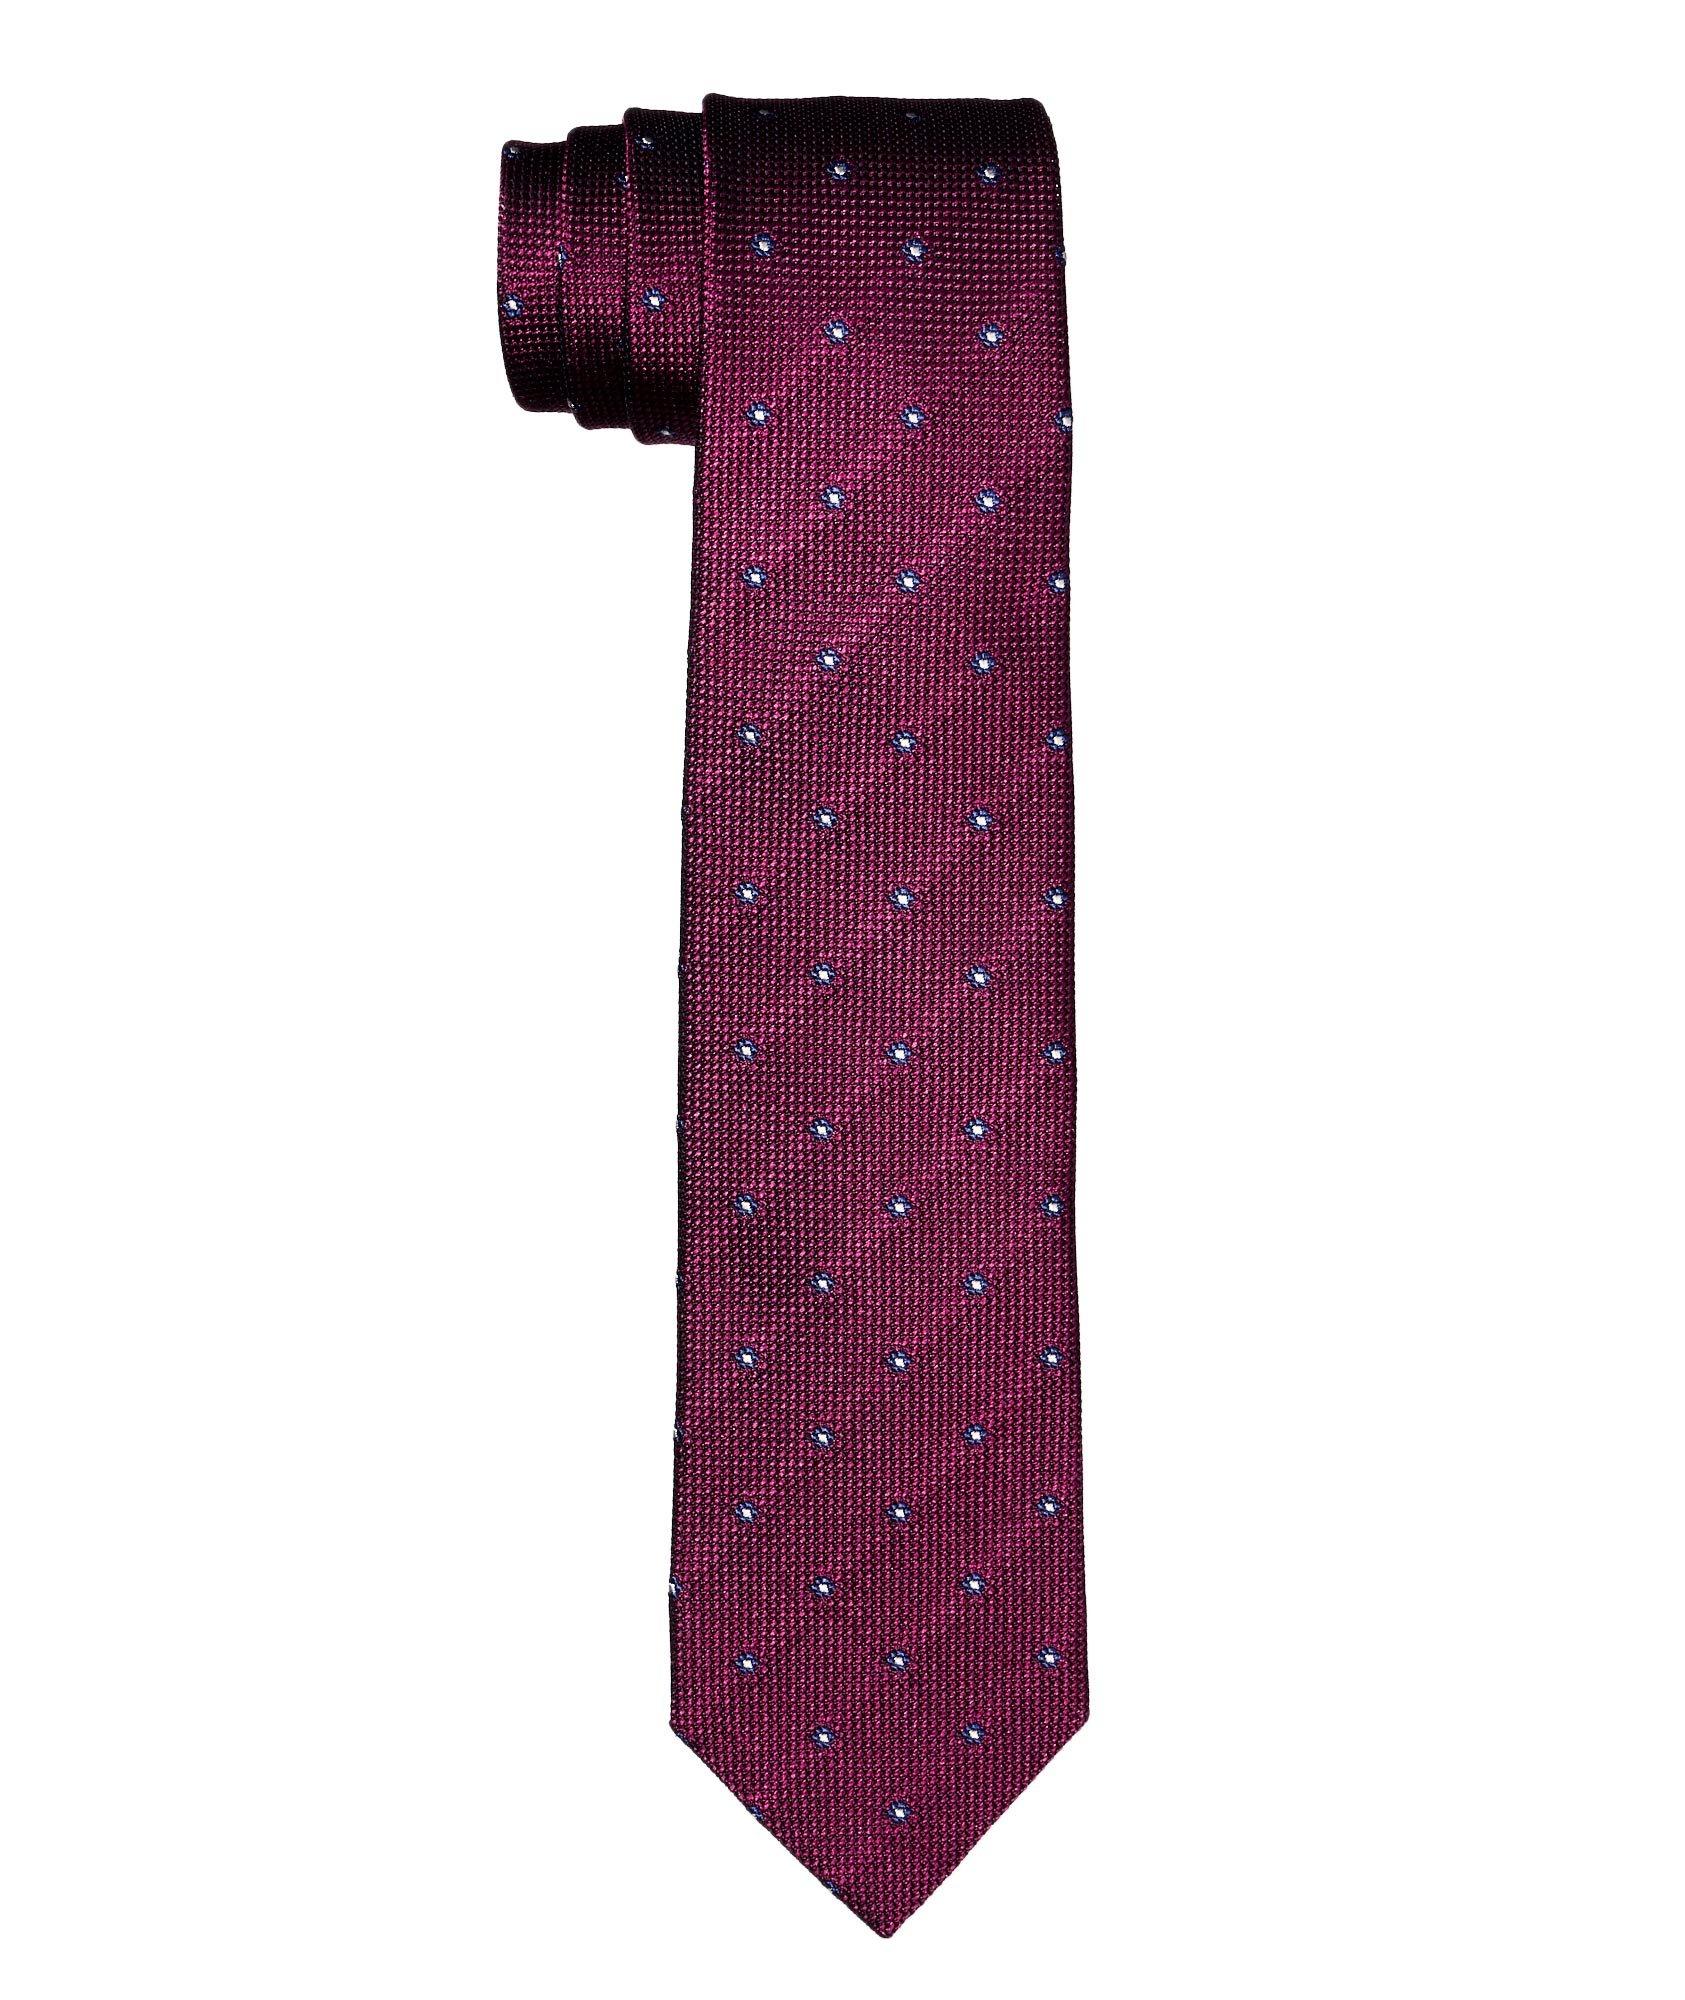 Cravate texturée en soie image 0